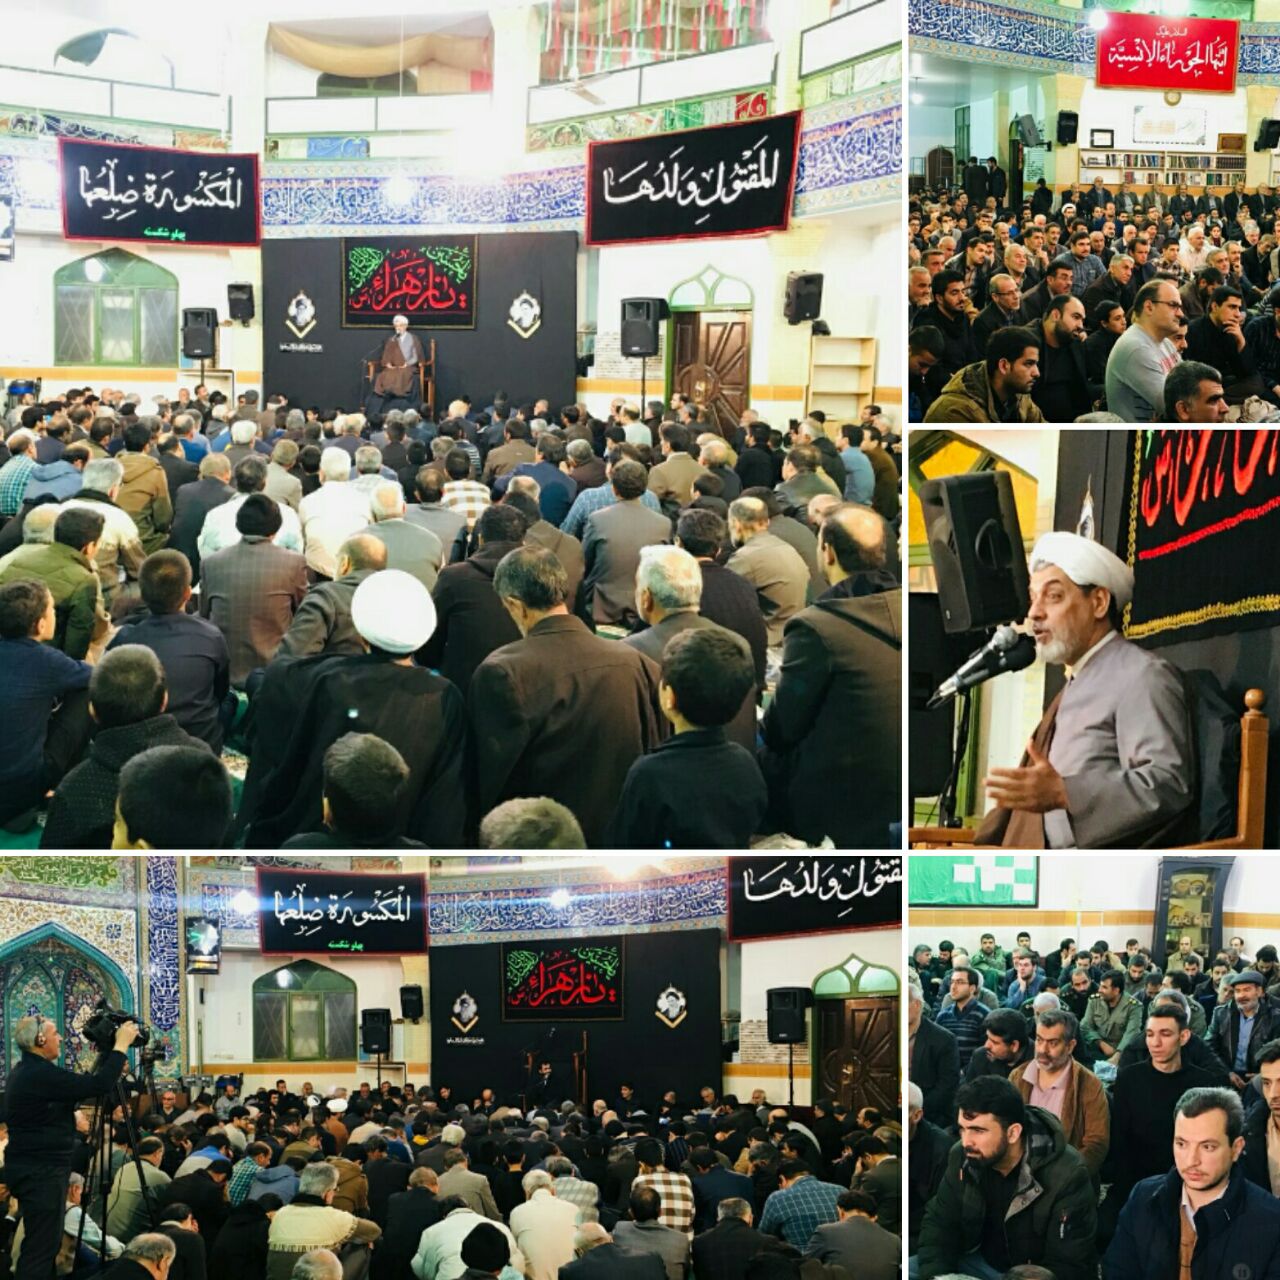  سخنرانی دکتر رفیعی به مناسبت دهه فاطمیه در مسجد امام حسن(ع)